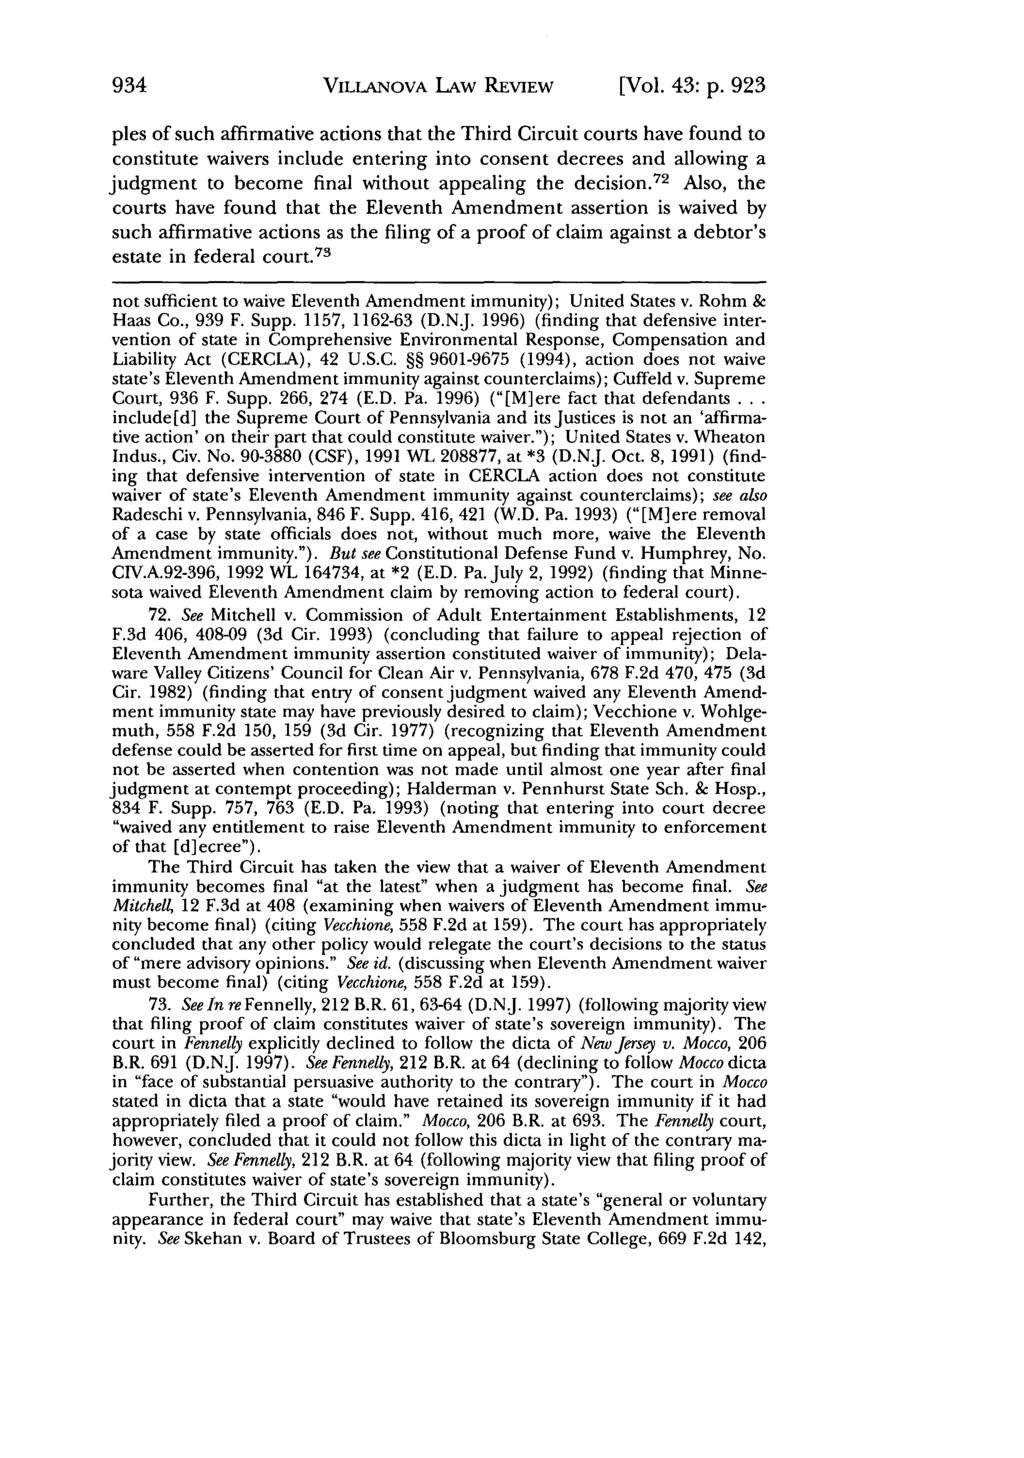 Villanova Law Review, Vol. 43, Iss. 5 [1998], Art. 1 VILLANOVA LAW REVIEW [Vol. 43: p.